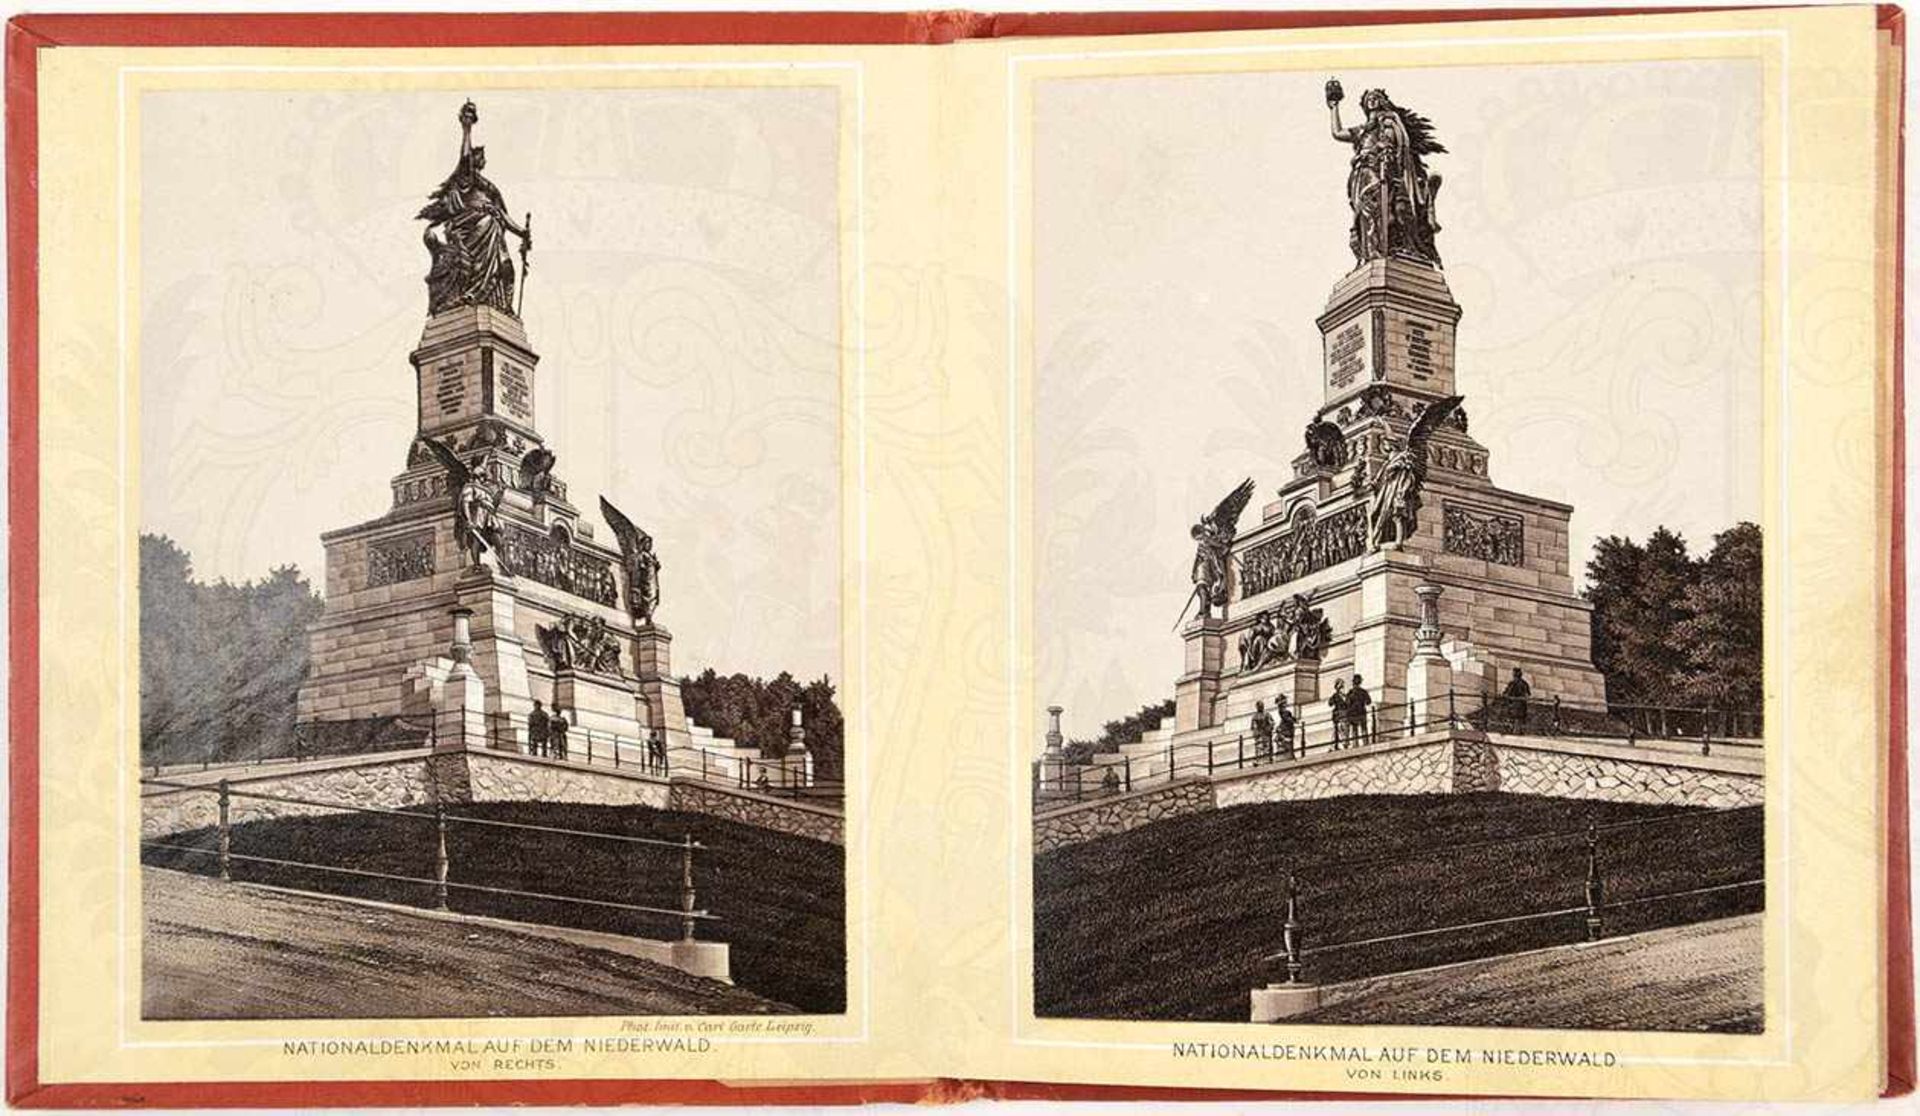 LEPORELLO „DAS NATIONALDENKMAL AUF DEM NIEDERWALD“, 1883, 15 S., 9 Abb. nach Fotografien, kart., ca. - Bild 2 aus 2